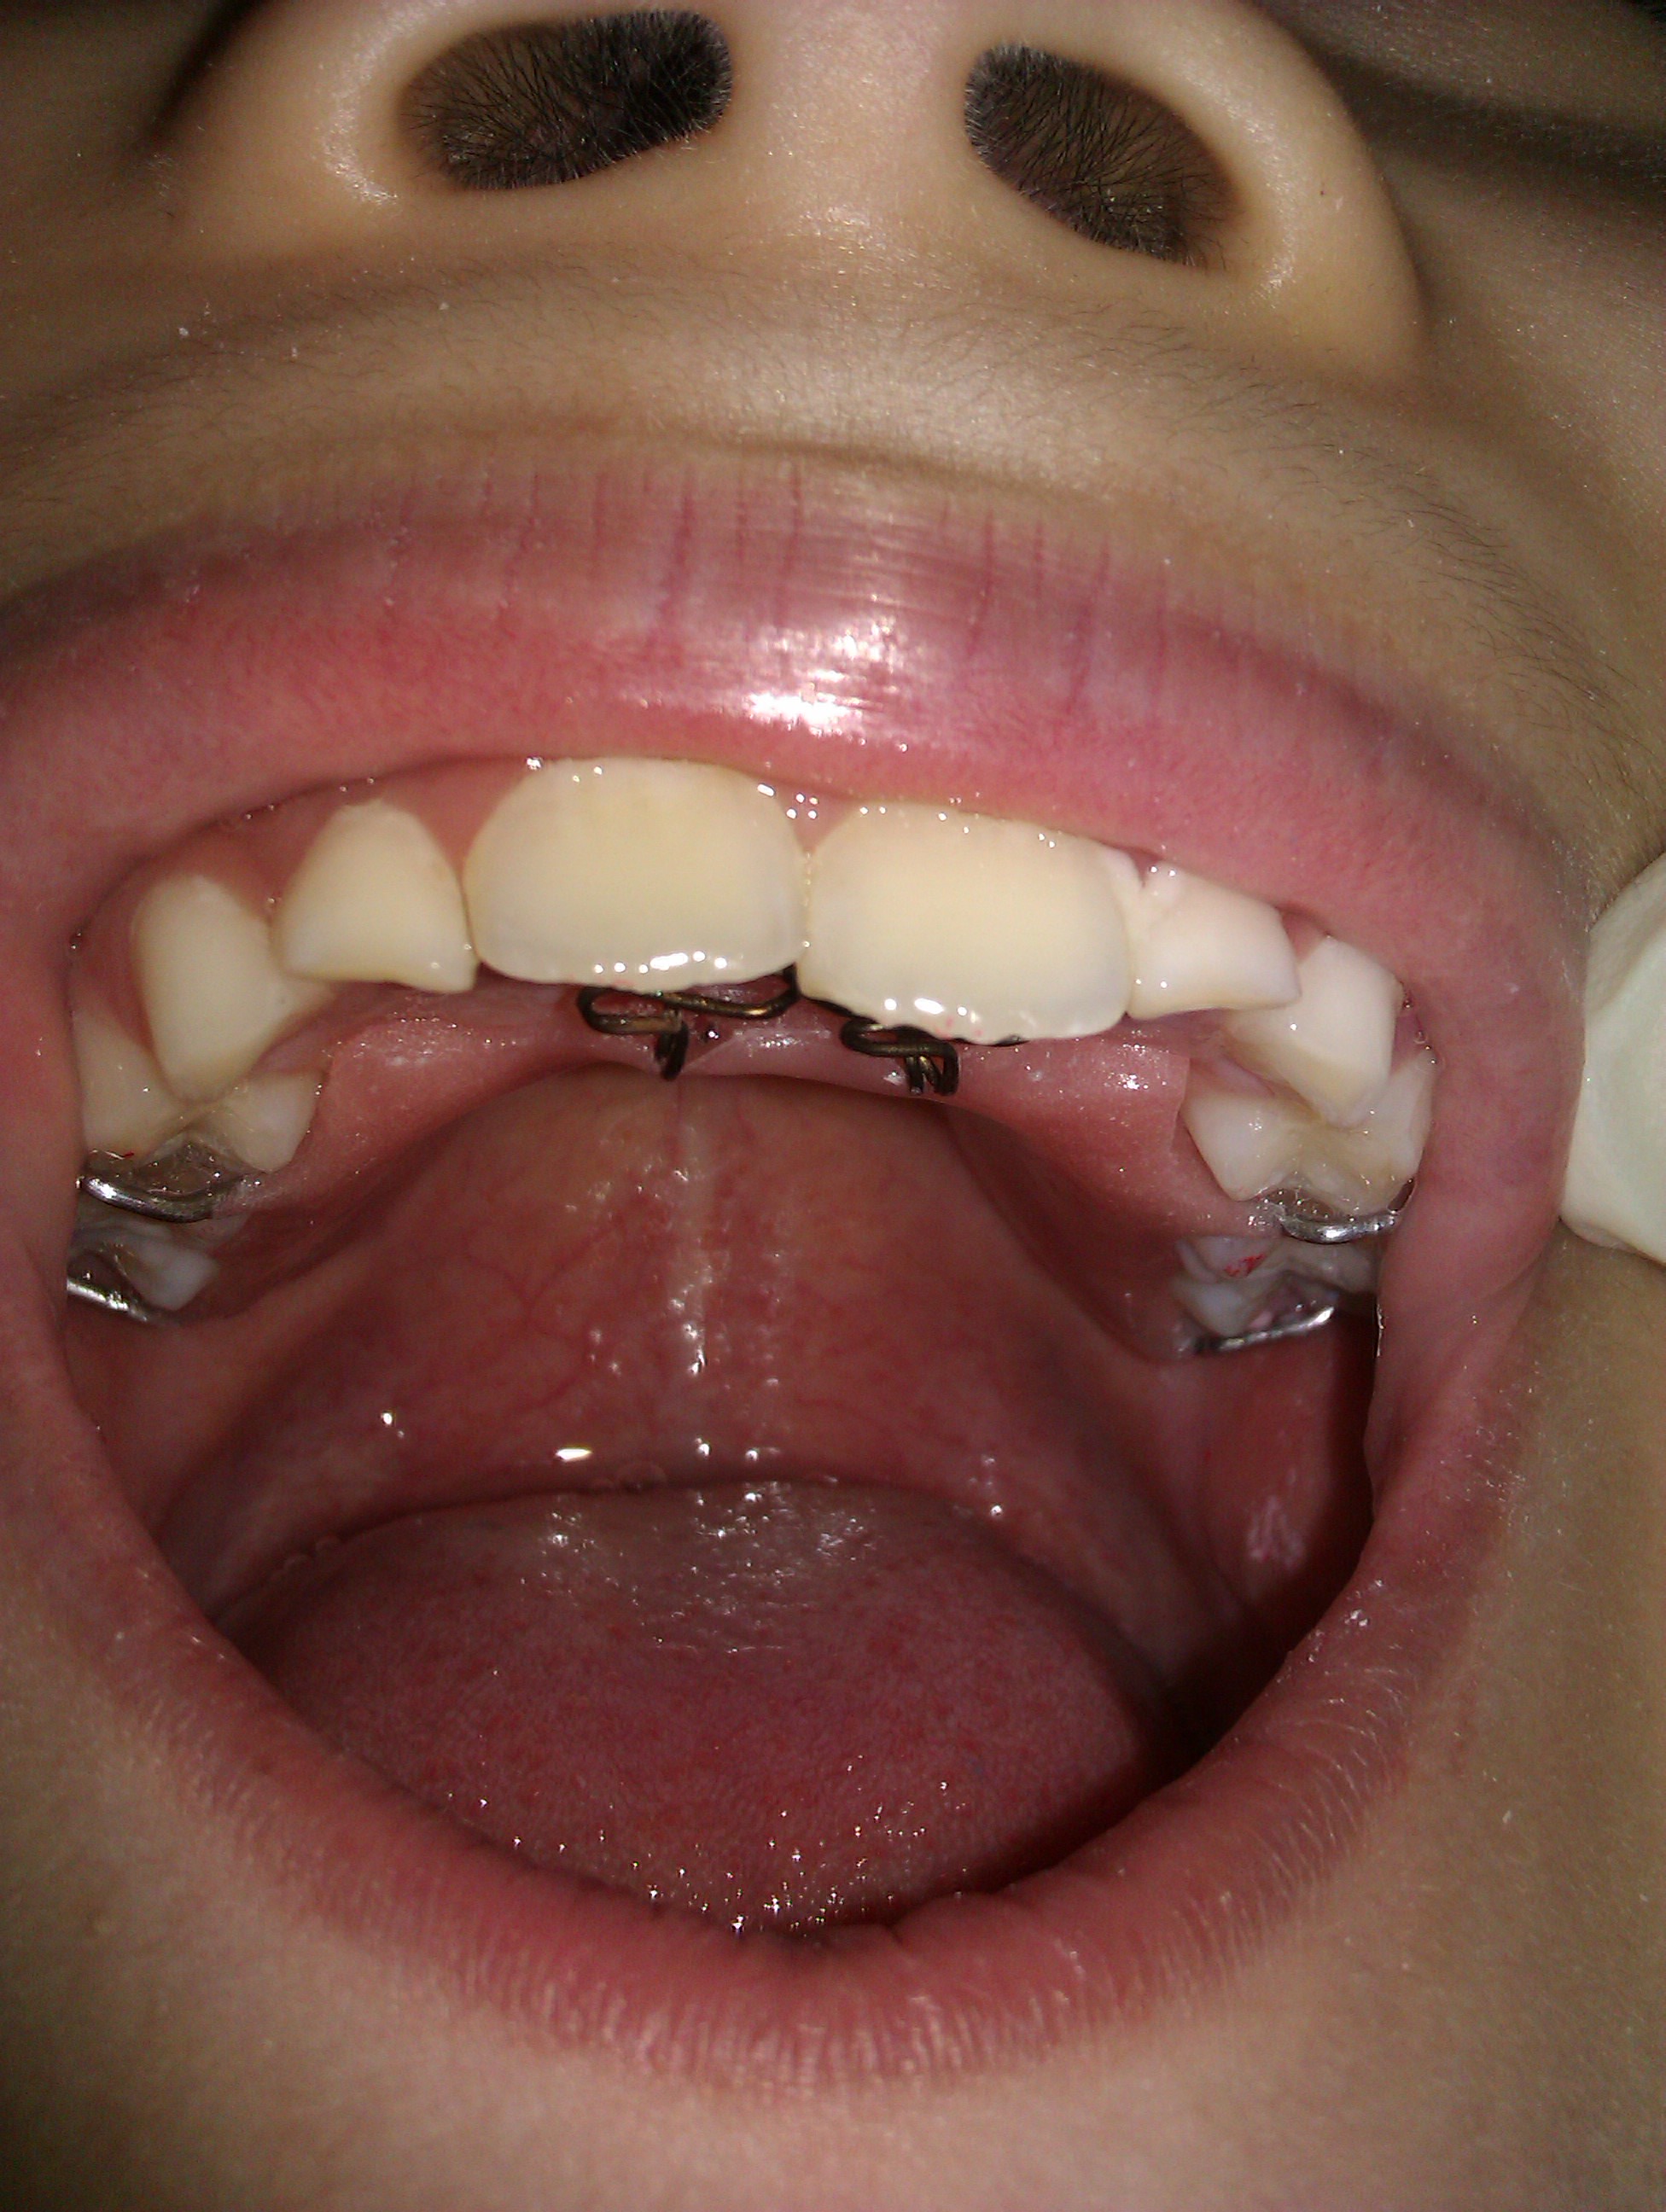 针对家长在乳牙及替牙期不重视,以为换牙后牙齿会变整齐正常的误区!